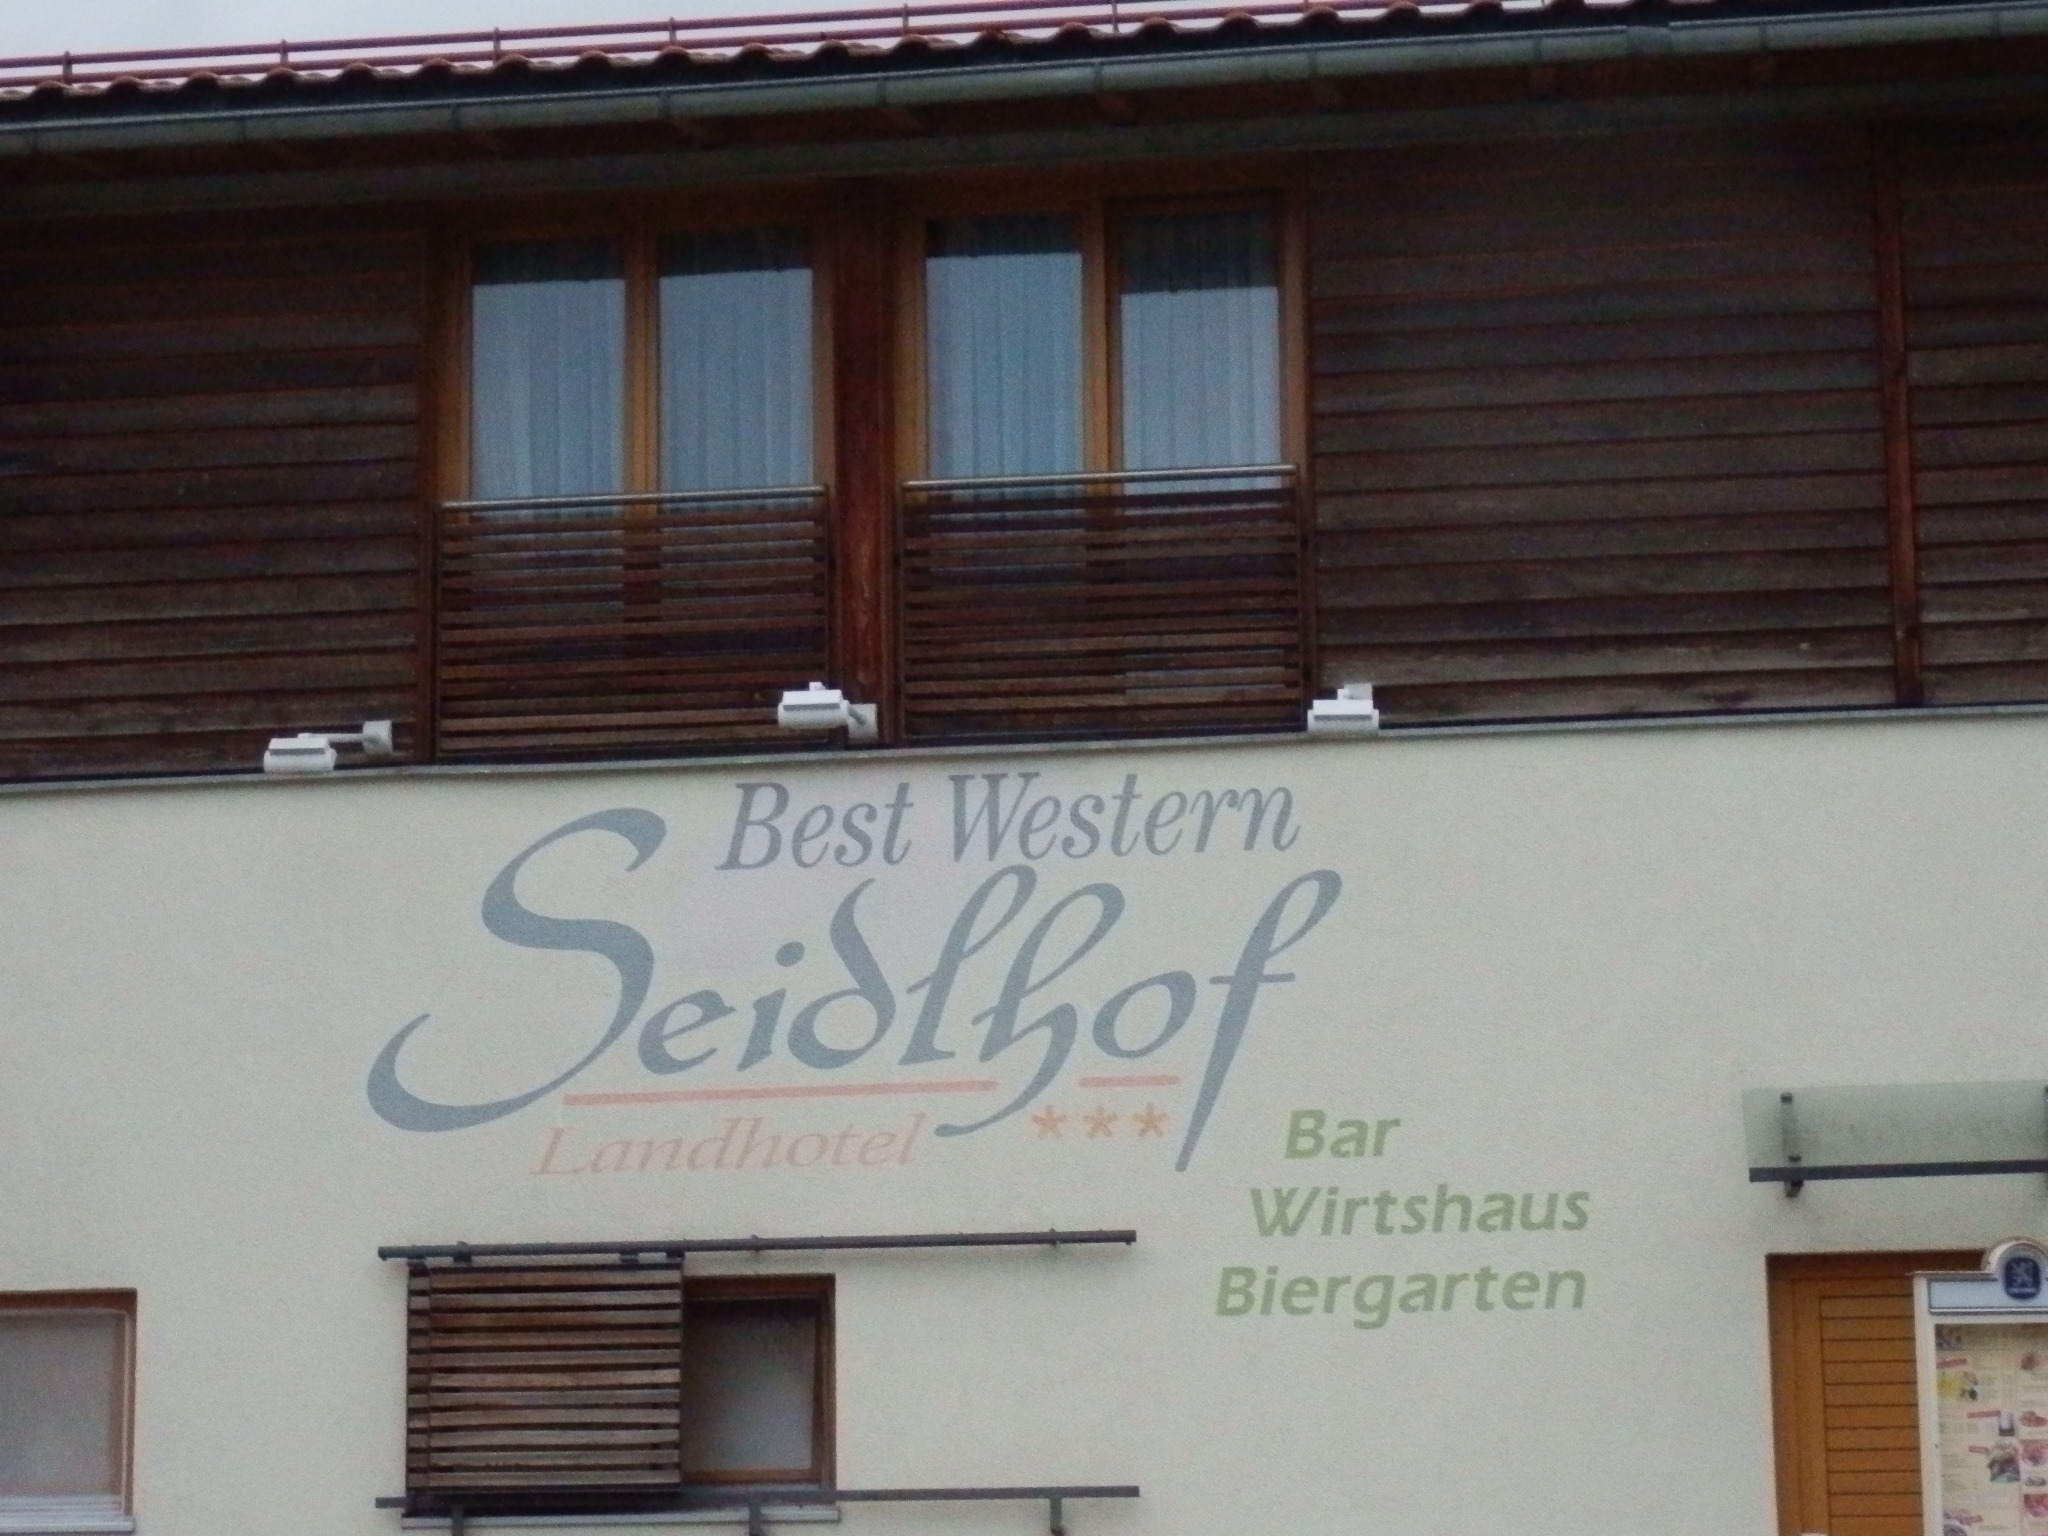 Hotel Best Western Seidlhof